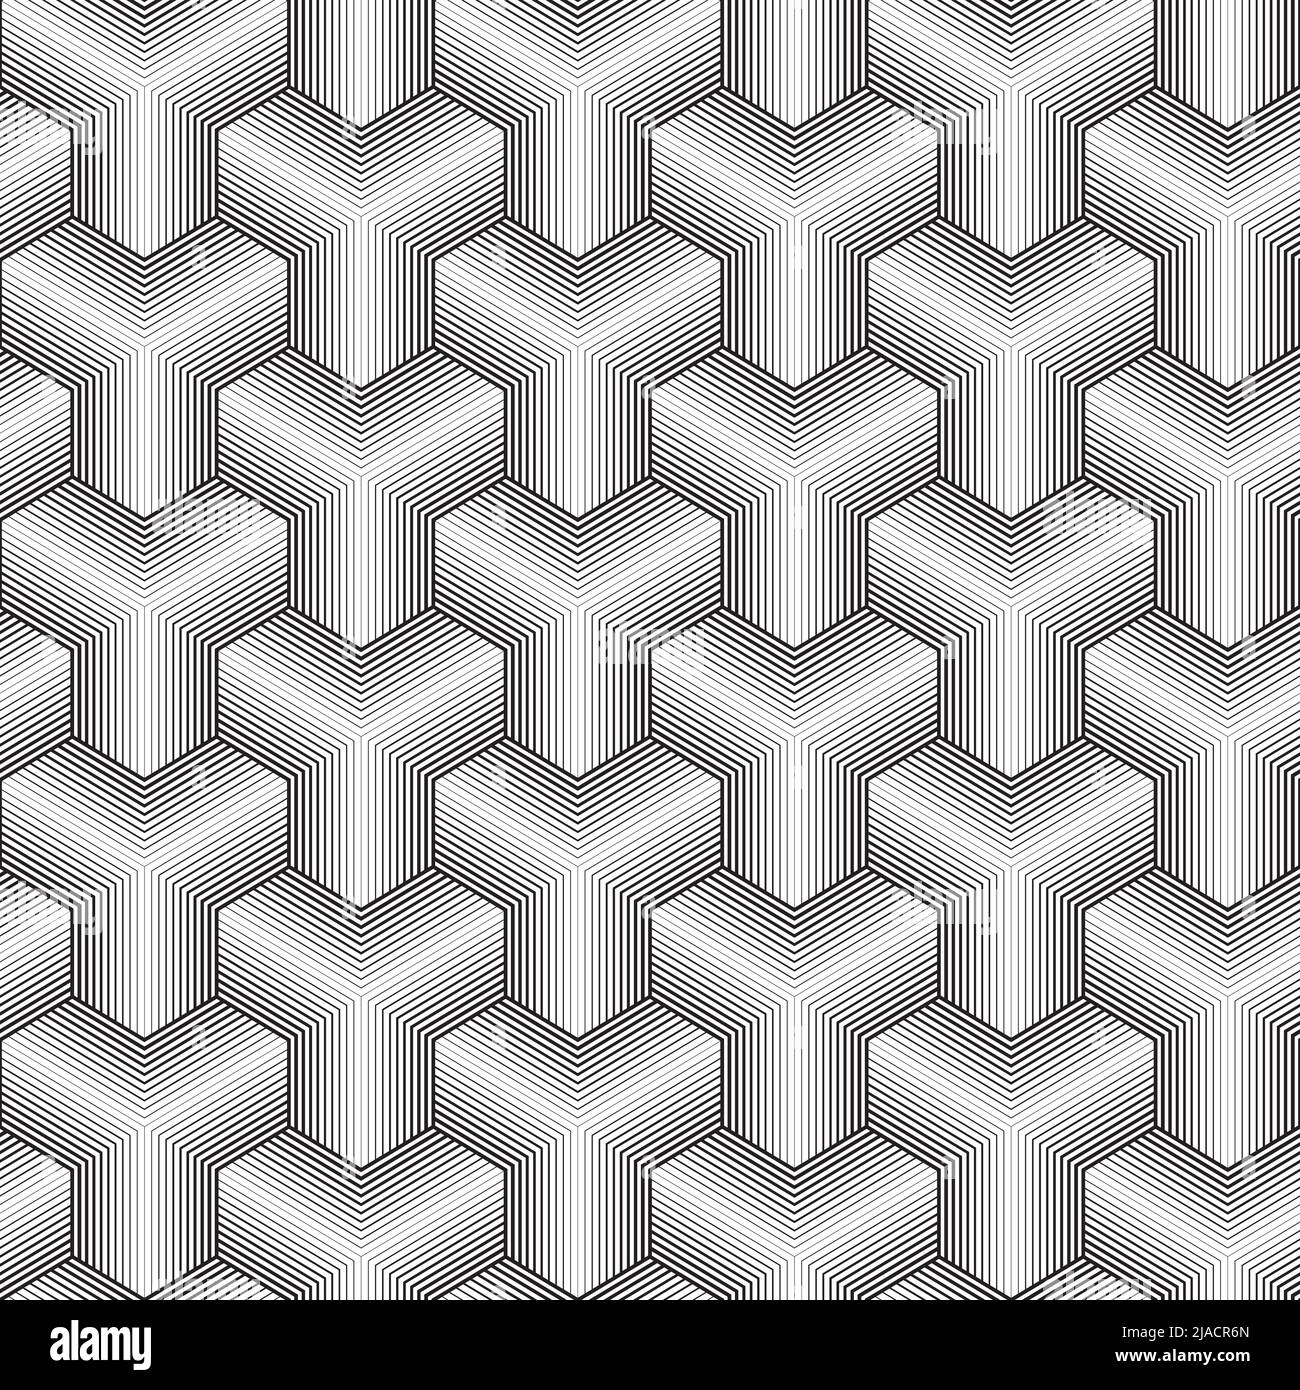 Dünne Linien Cubes Nahtloses Isometrisches Muster. Vektor kachelbarer Hintergrund in Schwarz und Weiß Stock Vektor